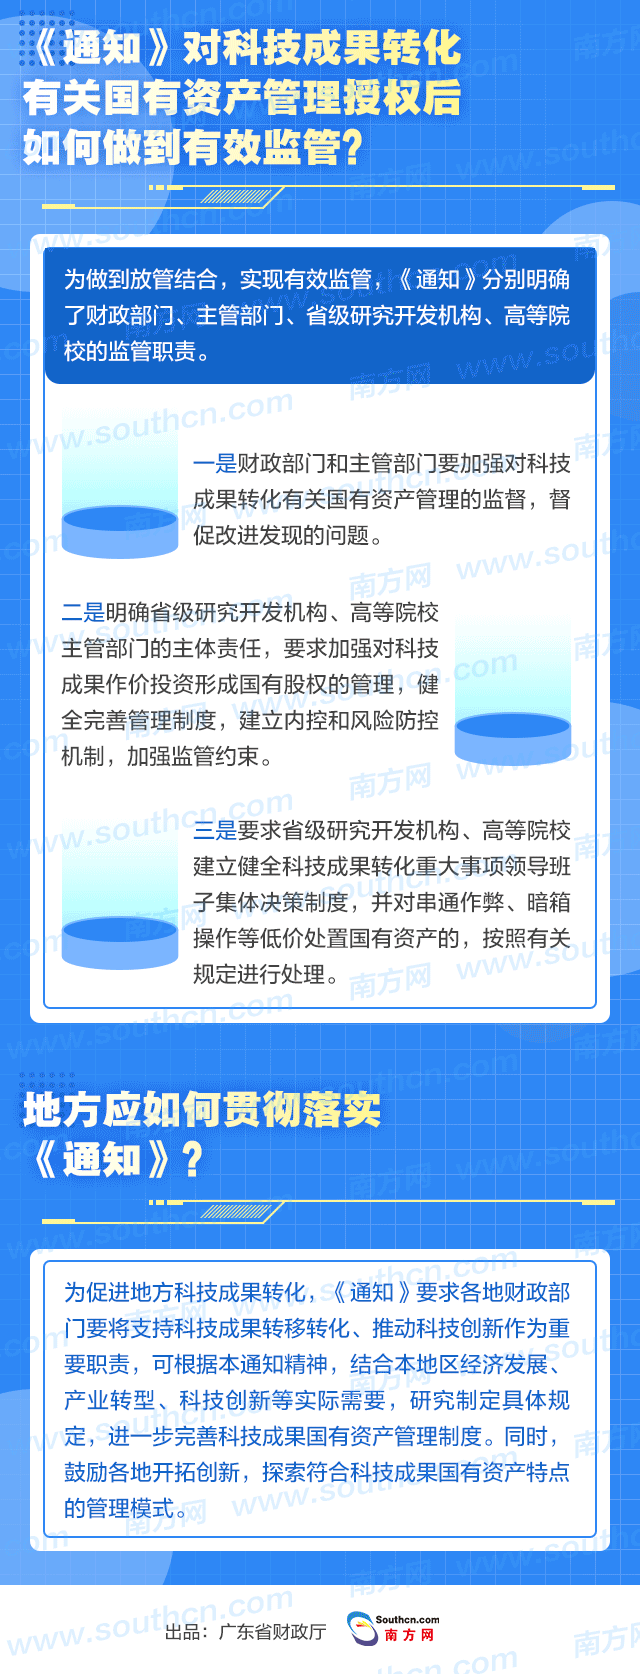 广东省财政厅关于进一步加大授权力度02.gif